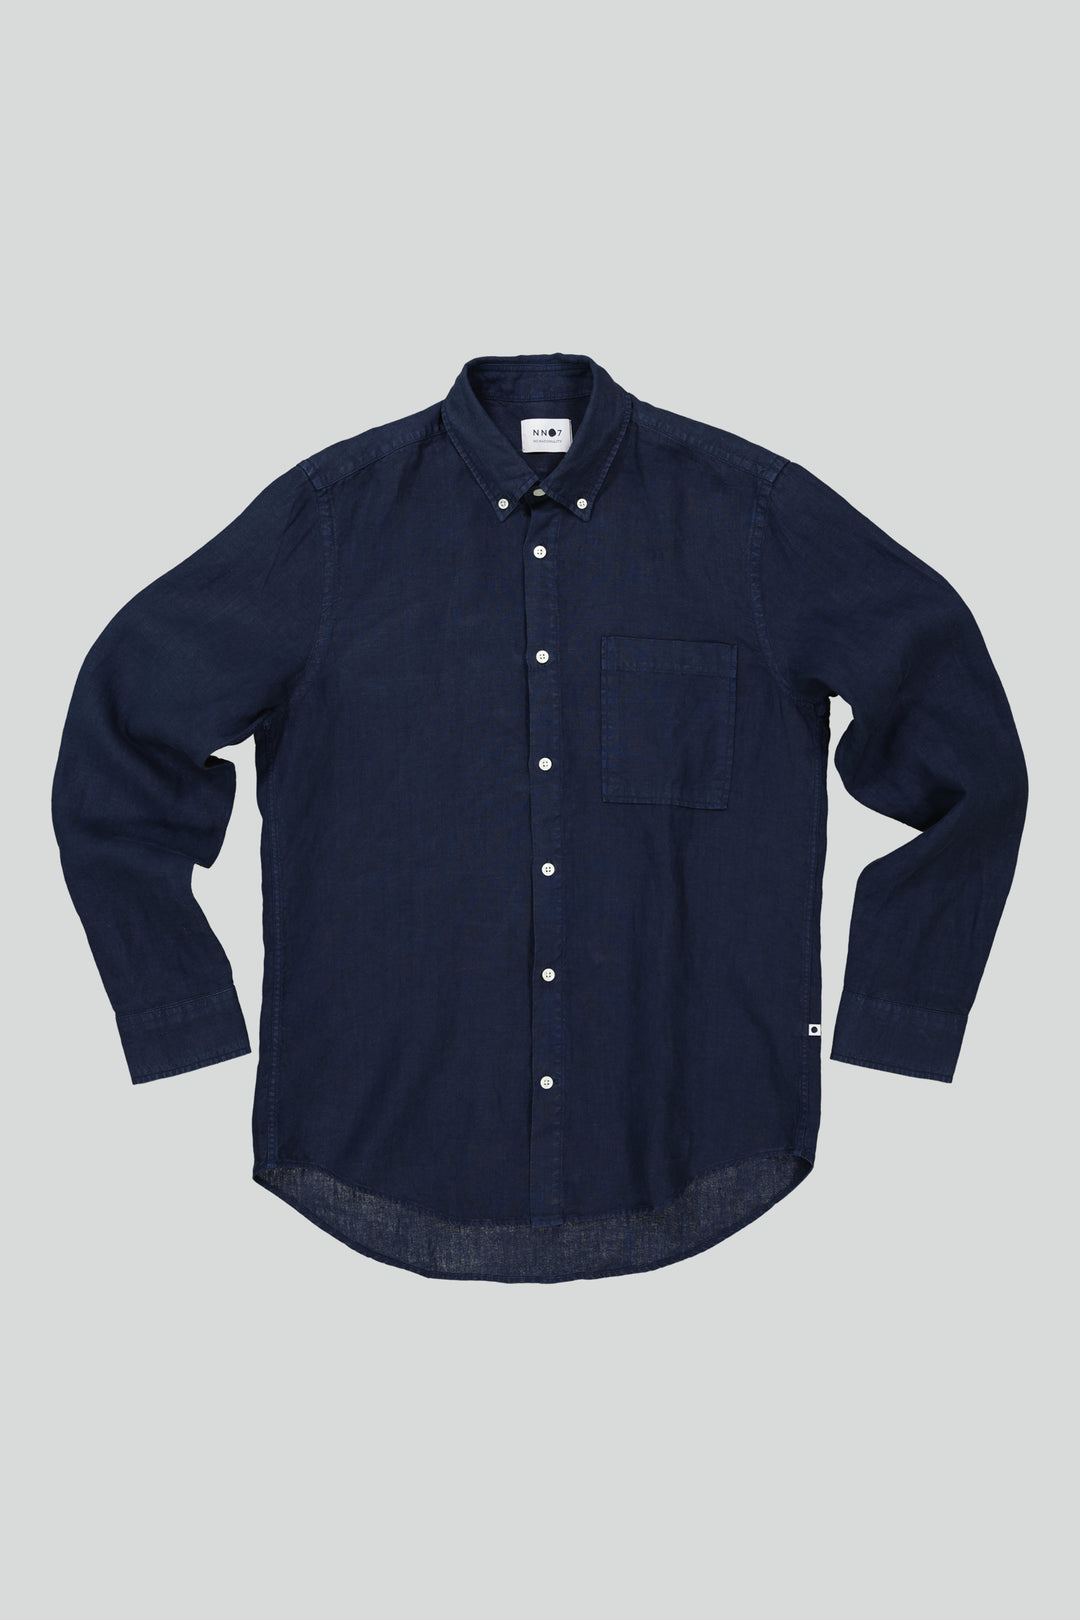 NN07 - Arne BD 5706 Linen Shirt in Navy Blue | Buster McGee